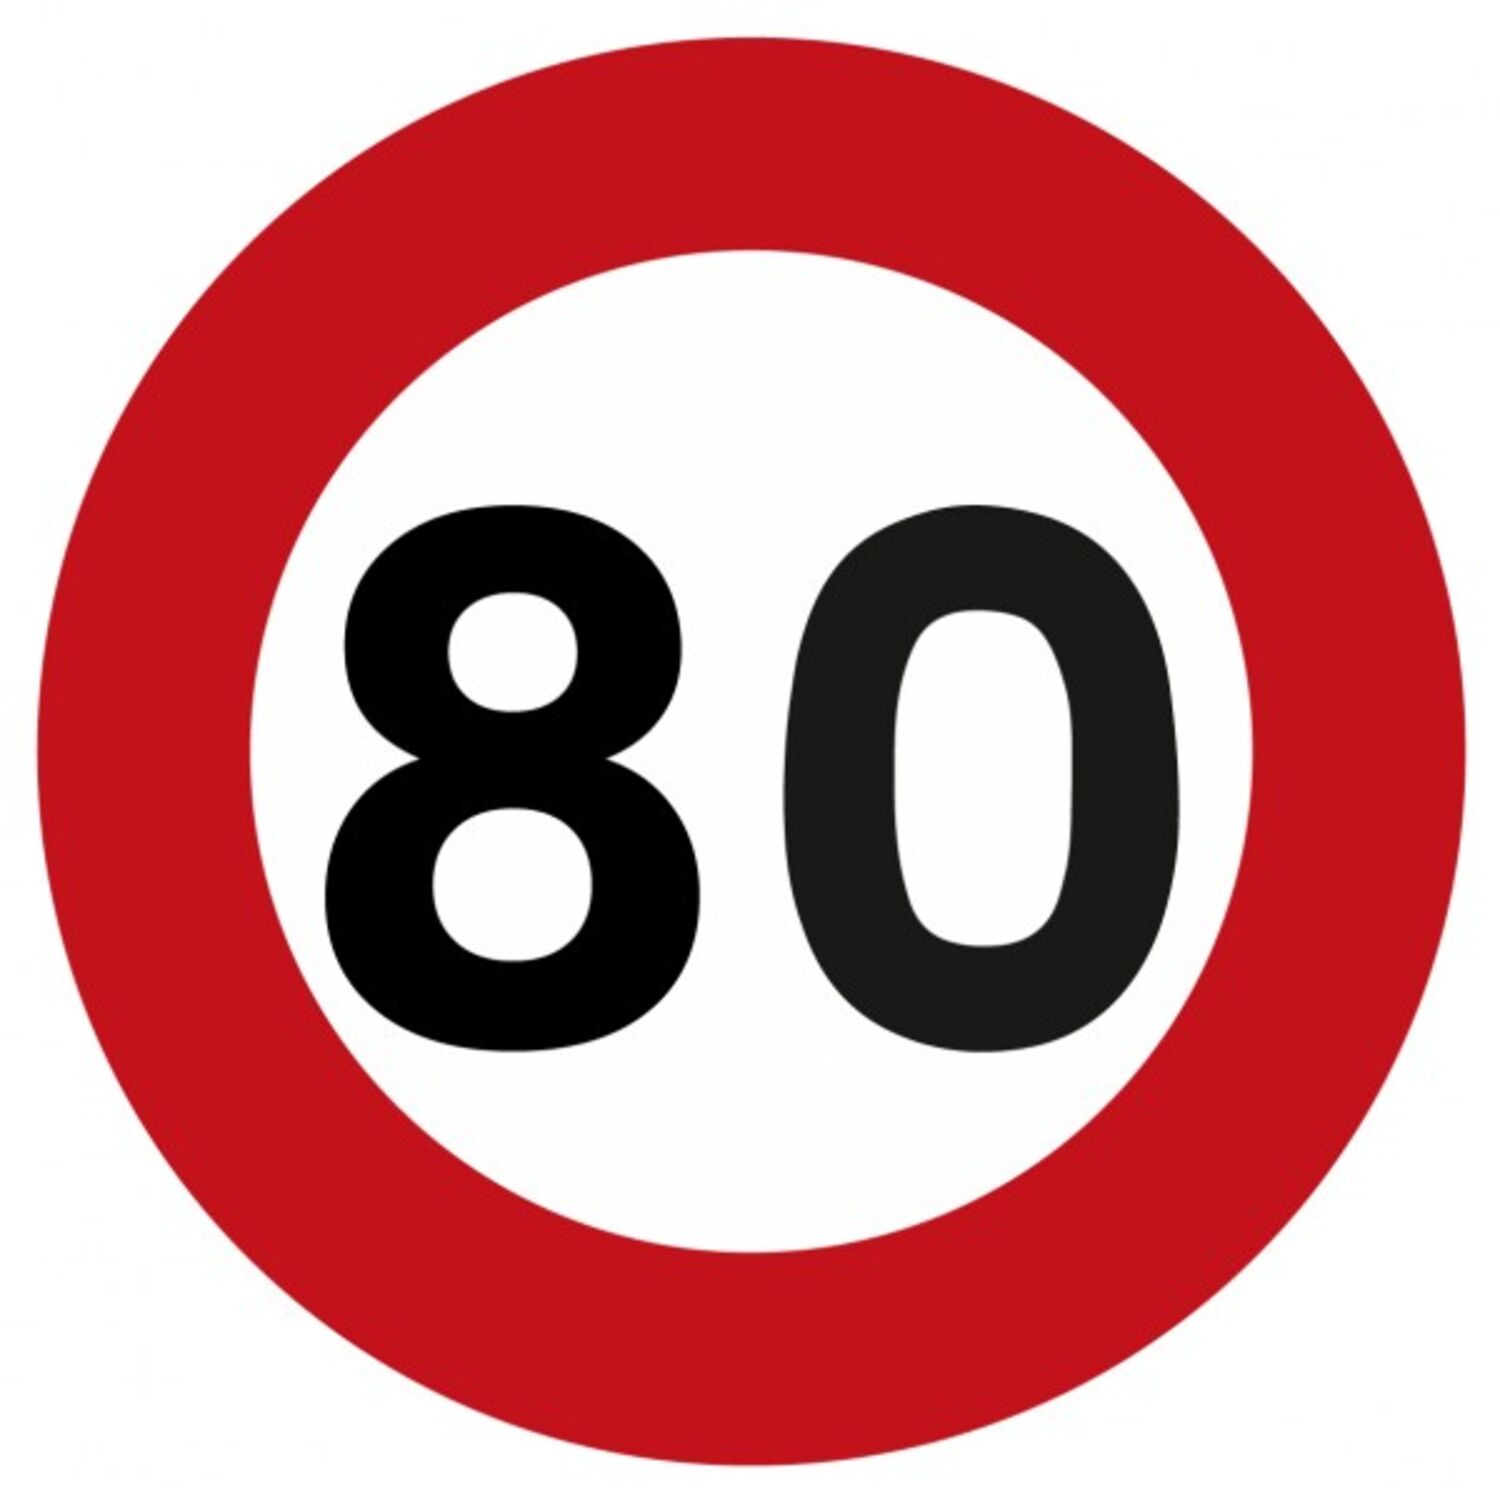 Limitation à 80km/h sur les routes : la réaction de l'Automobile club de Bourgogne